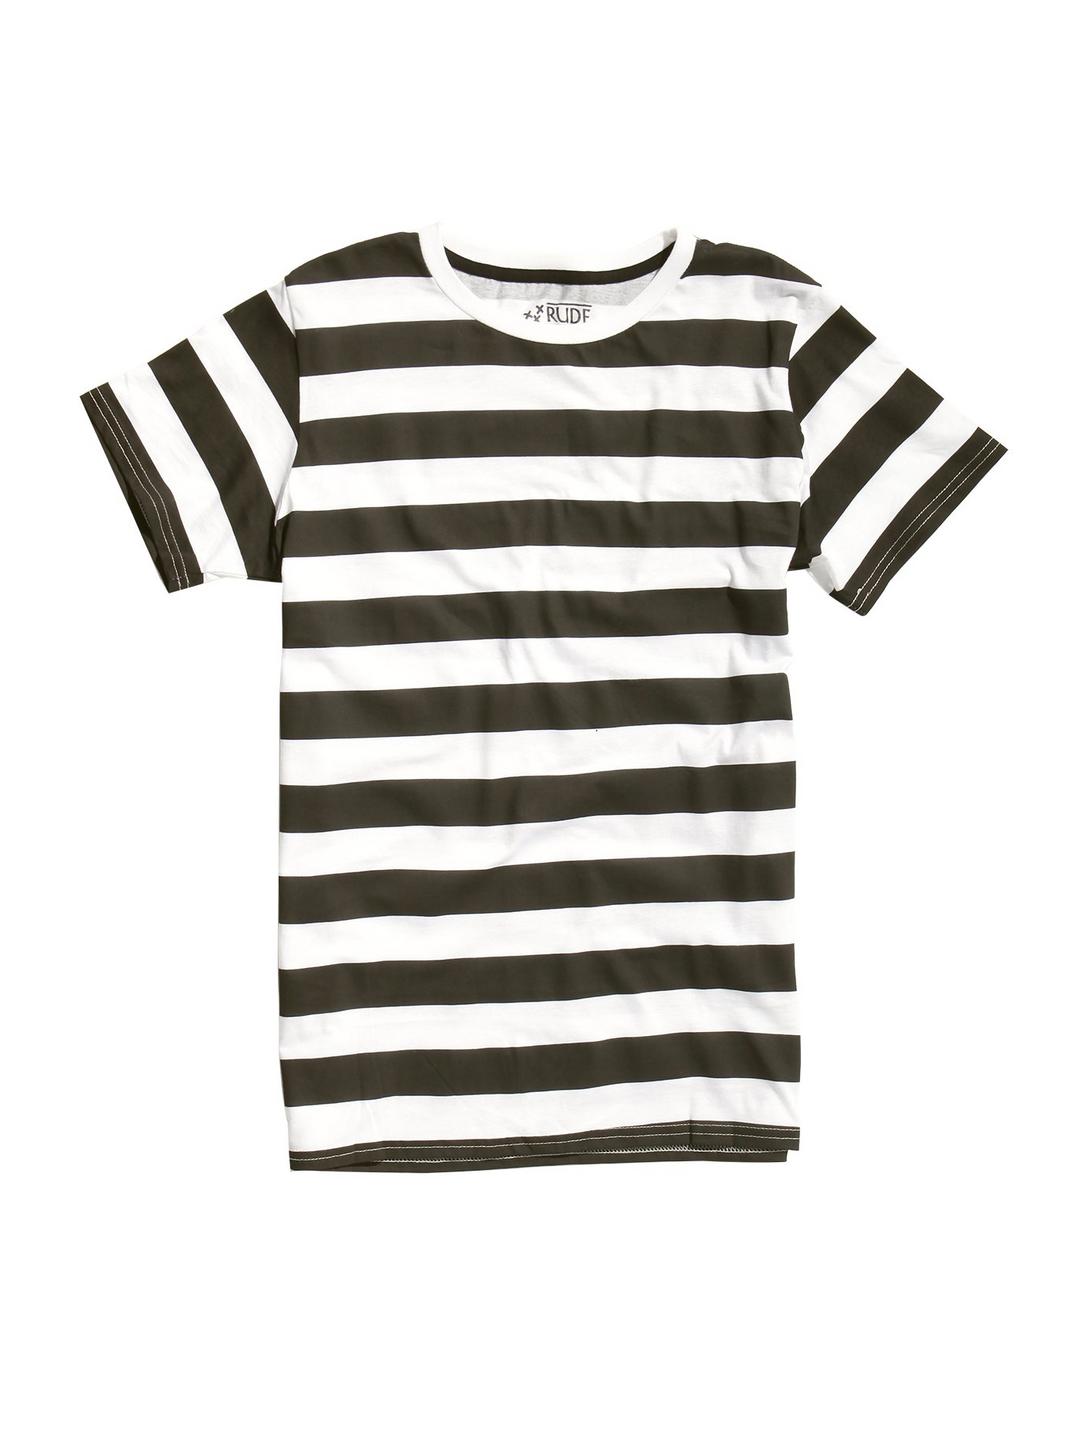 XXX RUDE Black & White Striped T-Shirt, STRIPES, hi-res